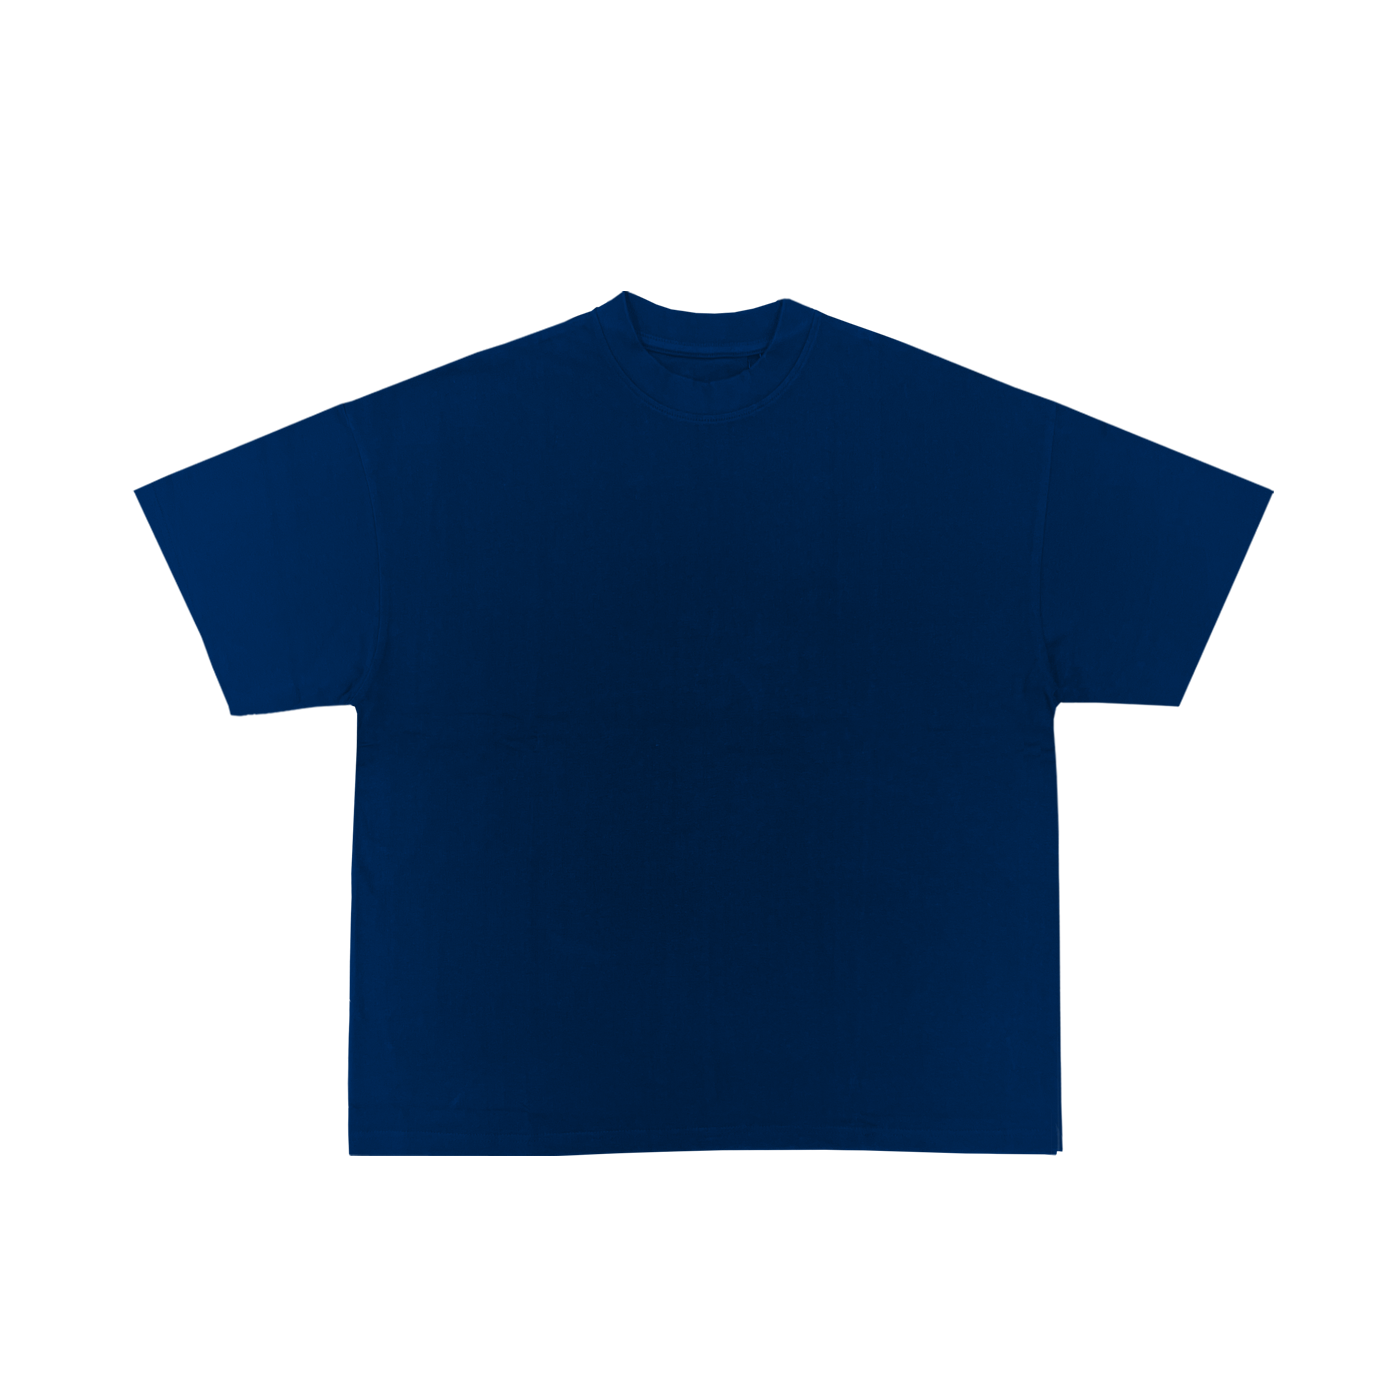 "T-shirt bleu marine à coupe standard en coton, parfait pour la personnalisation sur prynt.shop."